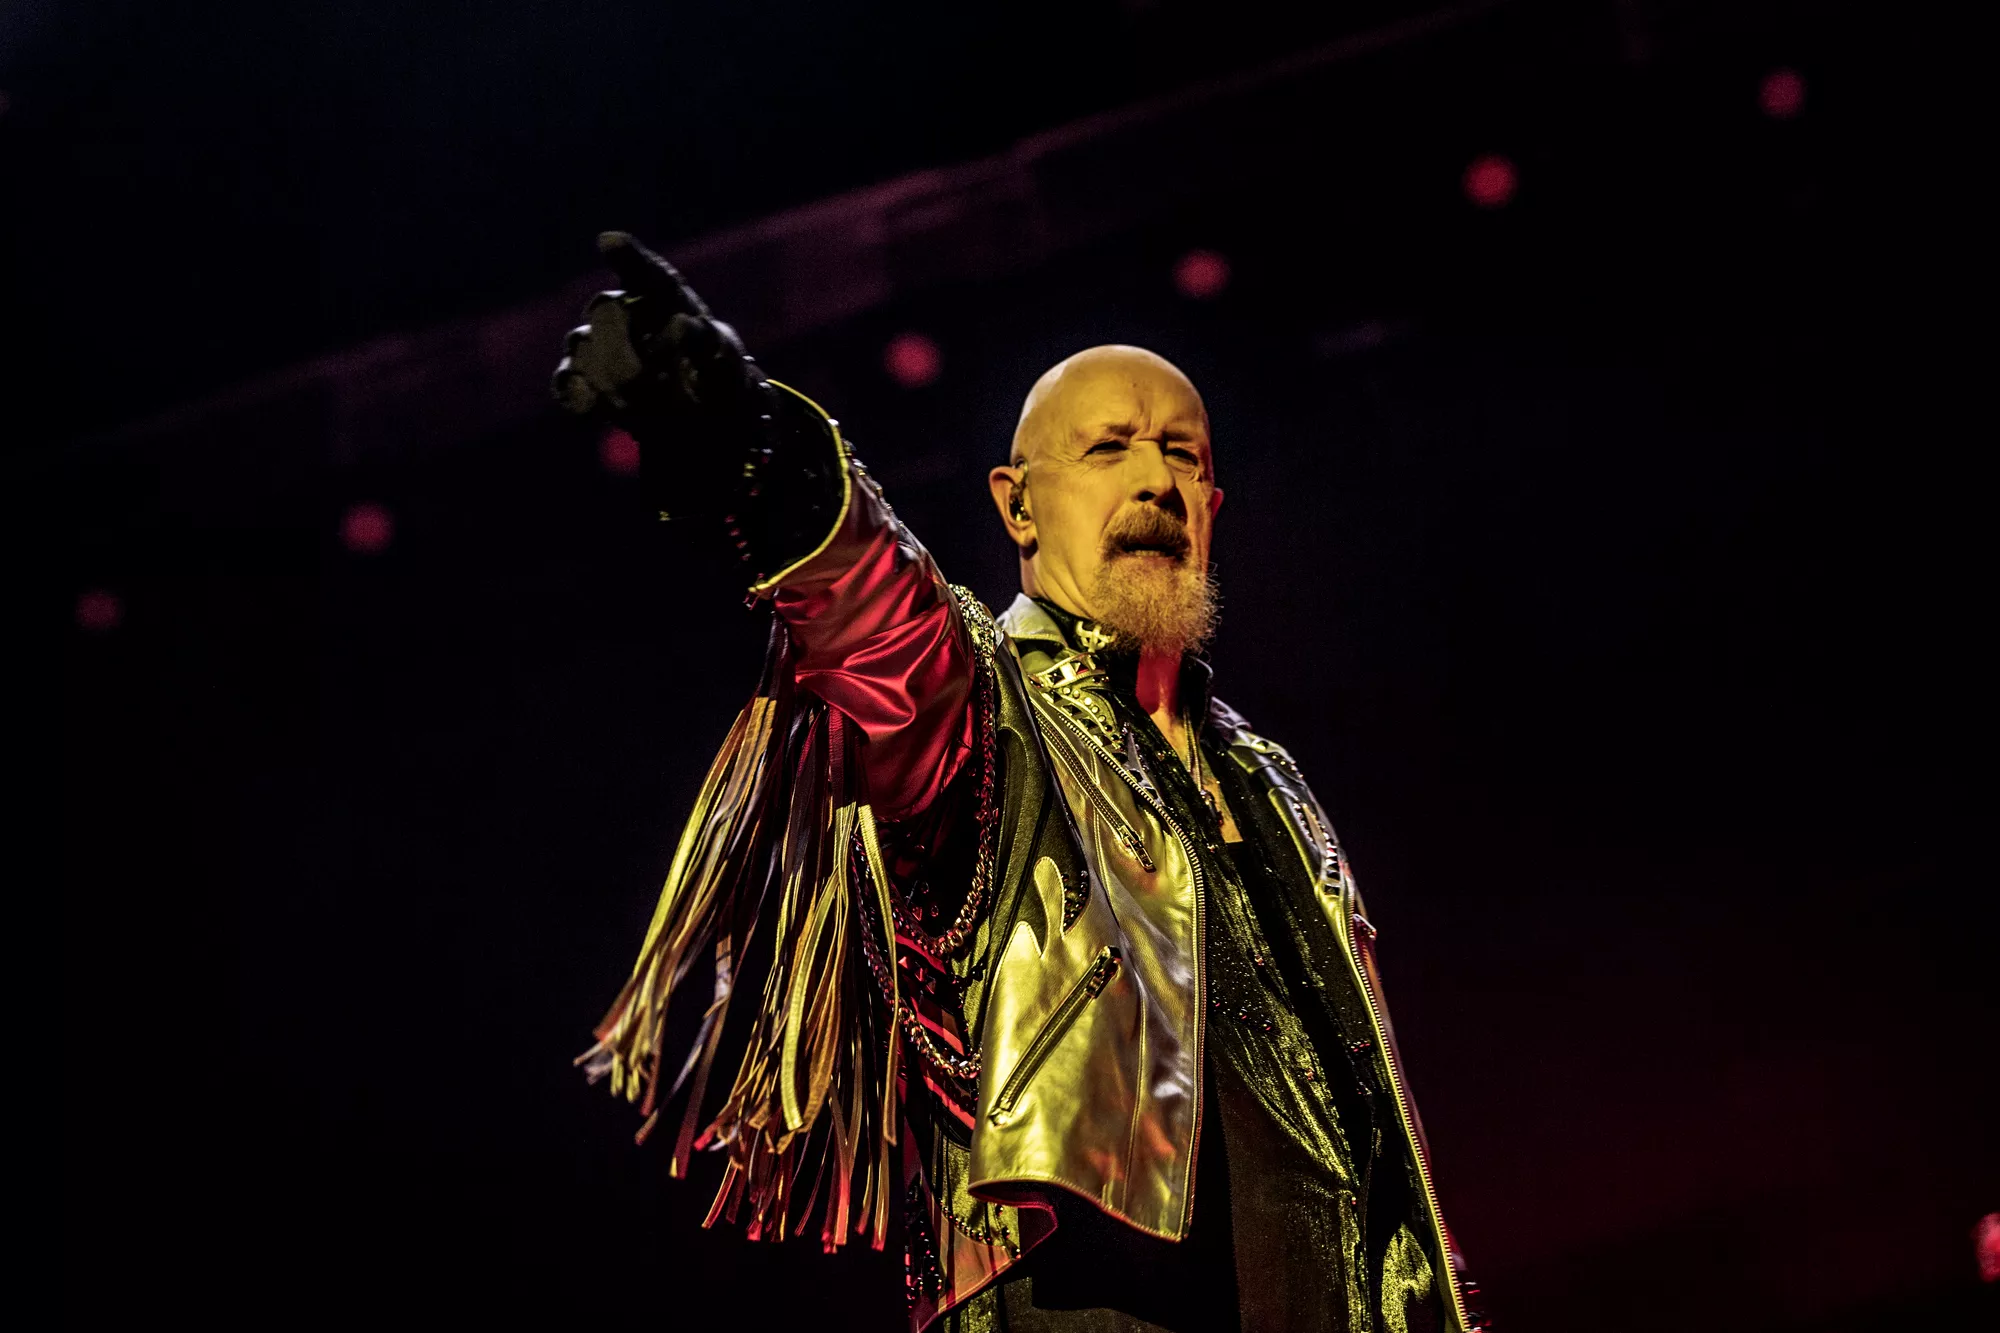 LISTA: Rob Halford i Judas Priest 70 år – här är hans bästa insatser